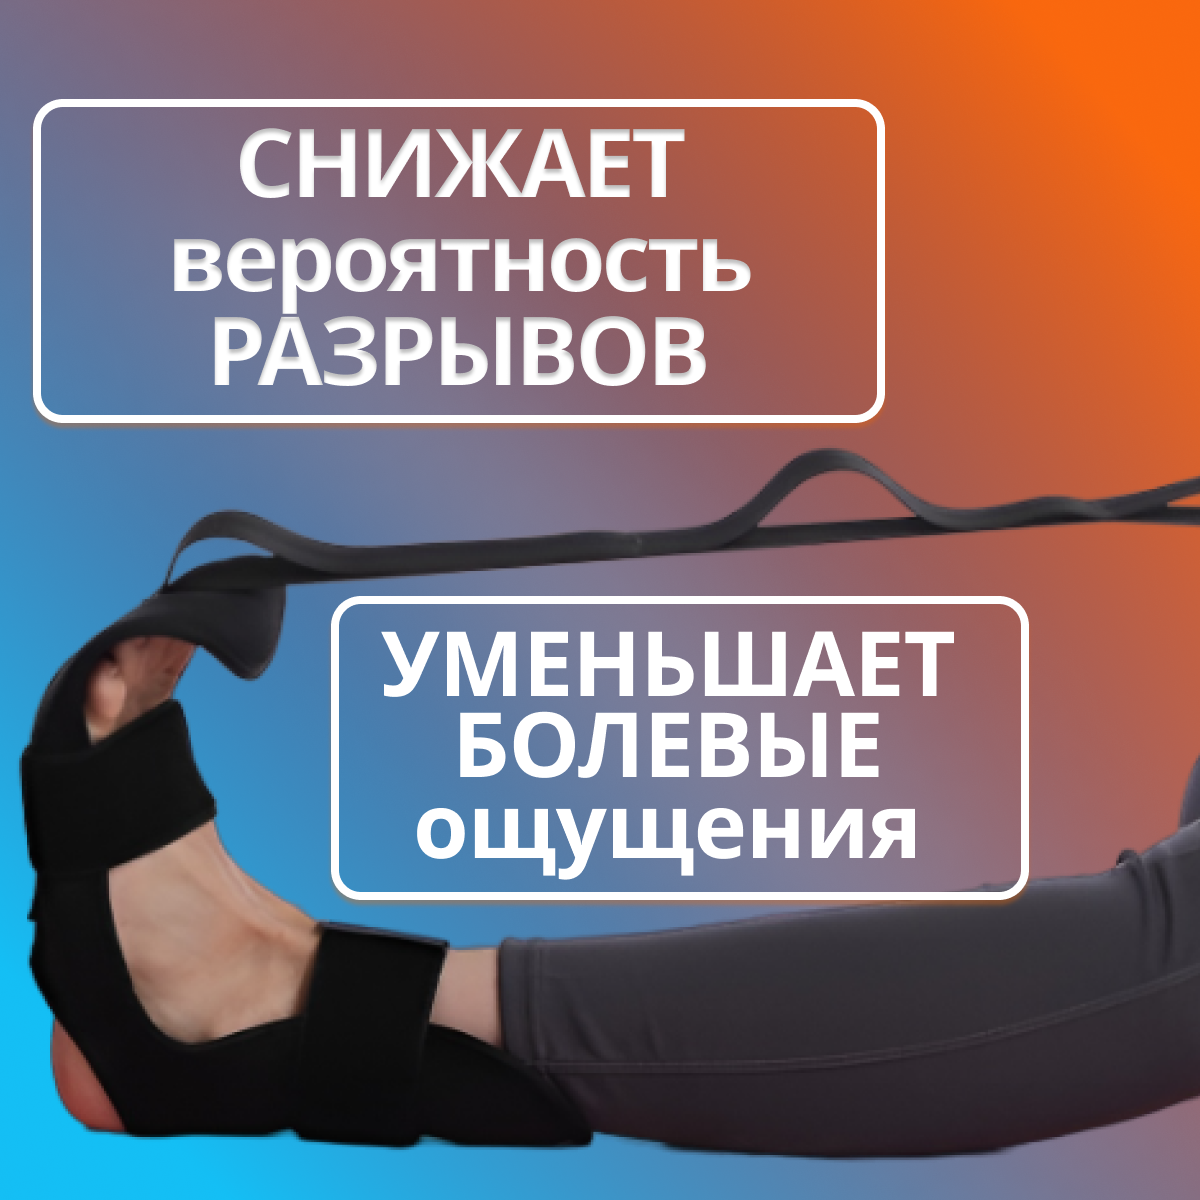 Ремень - экспандер для голеностопа домашний фитнес тренажер для растяжки мышц ног и спины лента реабилитация после травм